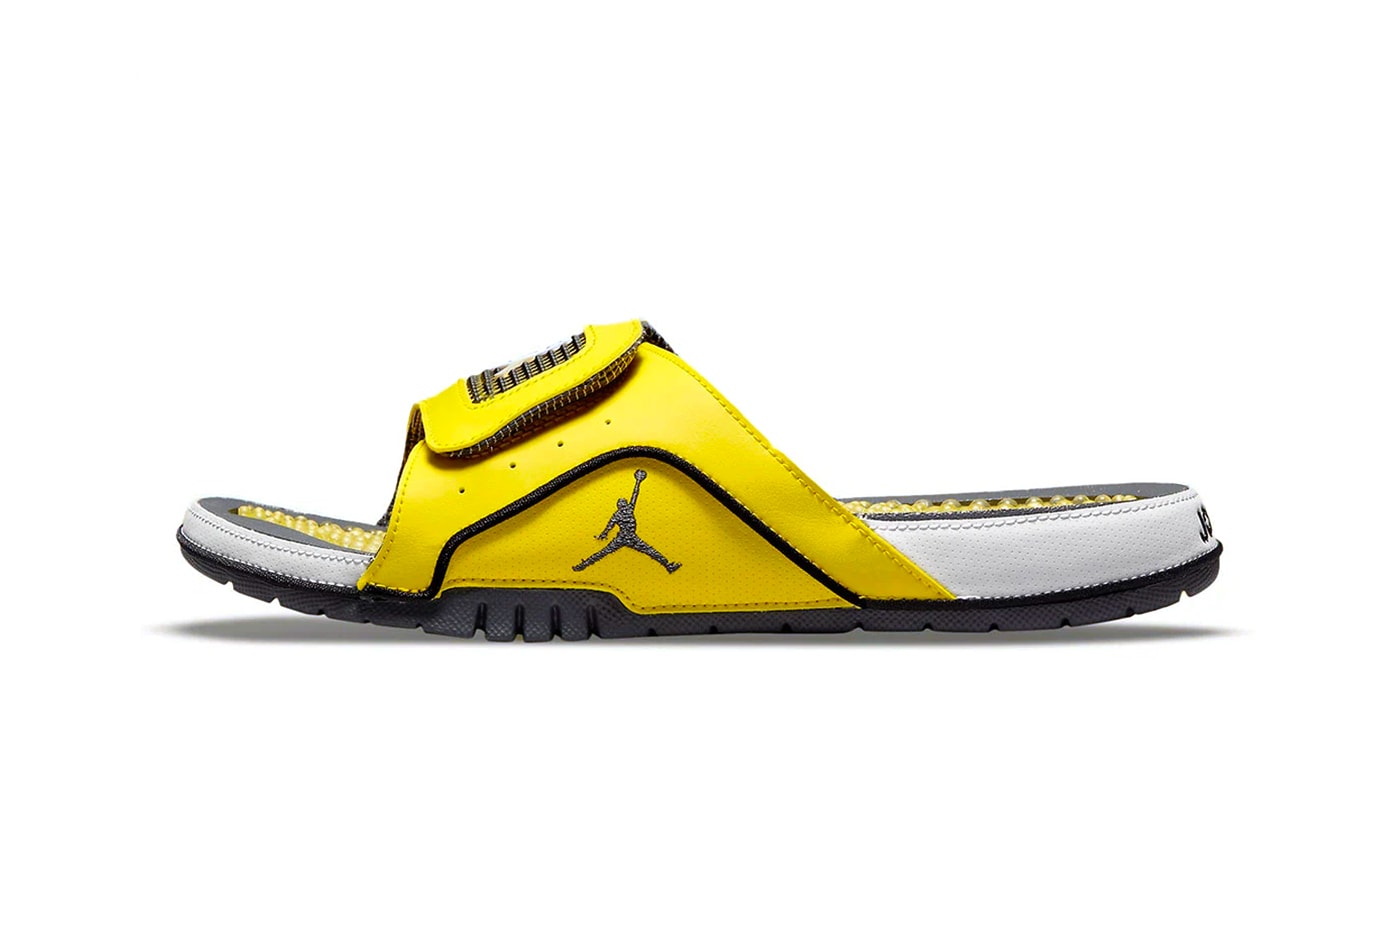 ジョーダン ブランドからエア ジョーダン 4 “ライトニング”のカラーウェイを纏ったサンダル ハイドロ スライドがリリースか Jordan brand Hydro Slide IV Lightning Colorway release DN4238-701 sandals slides footwear AJ4 IV